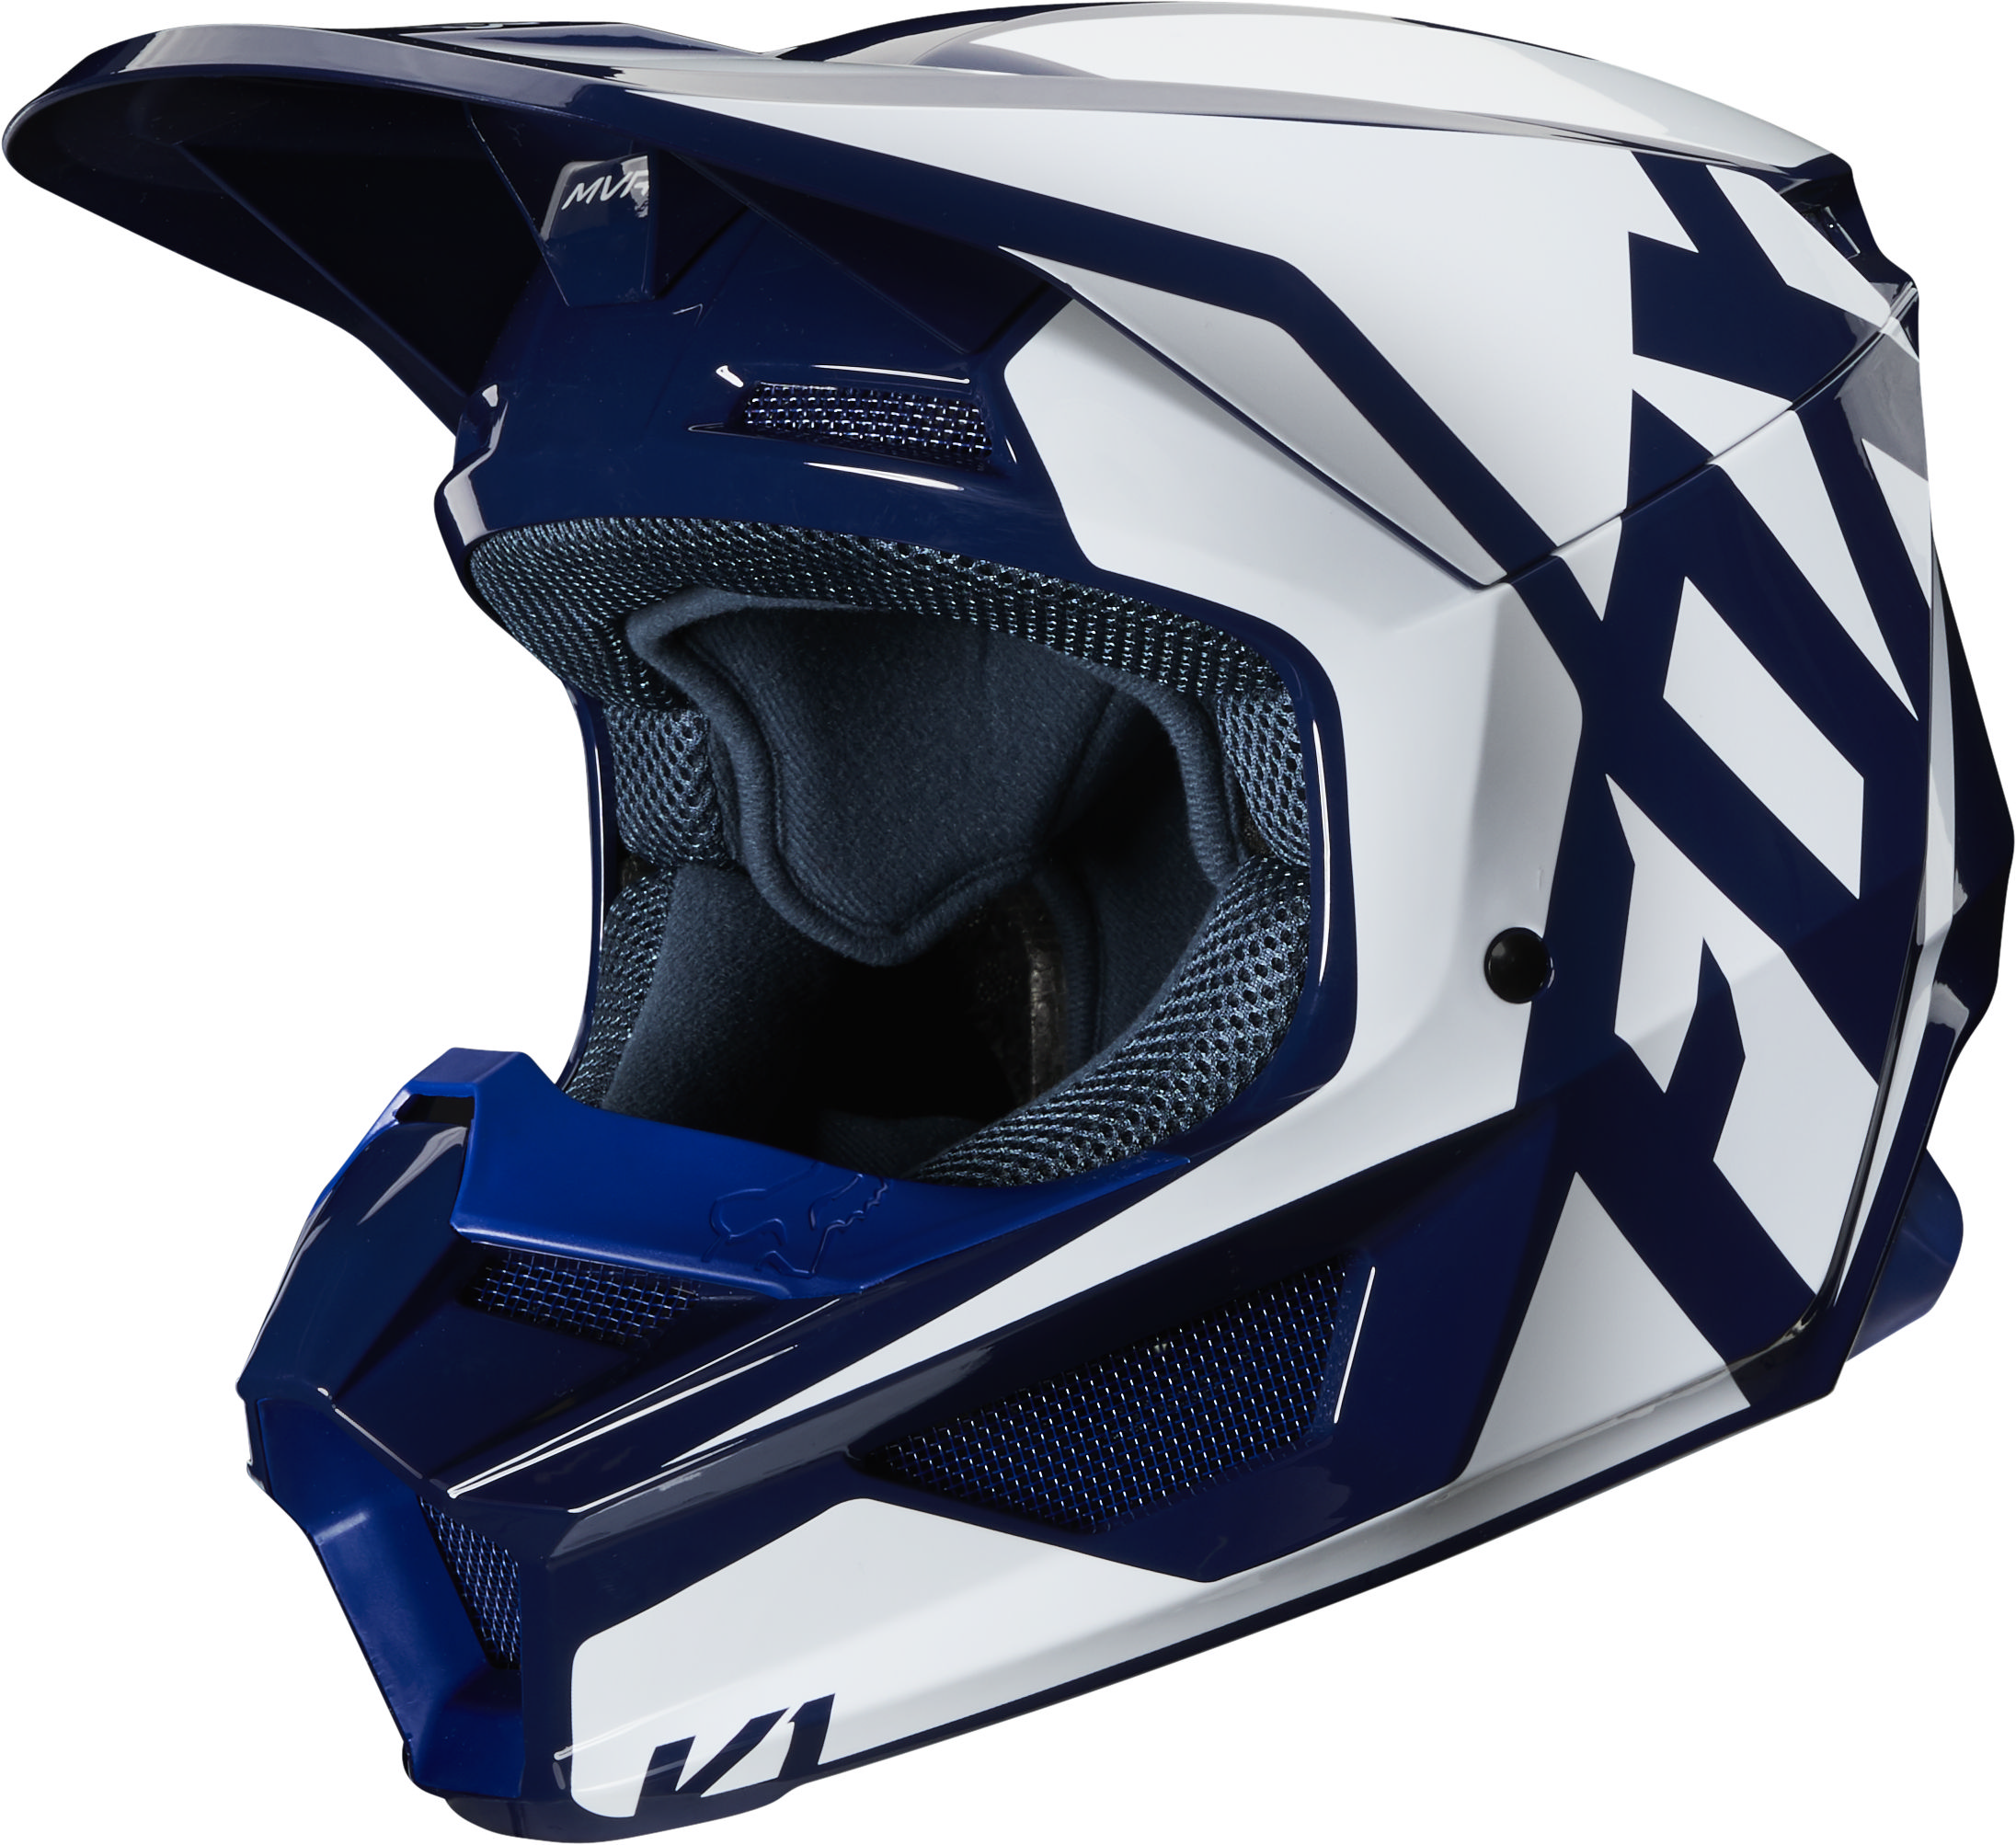 blue dirt bike helmet